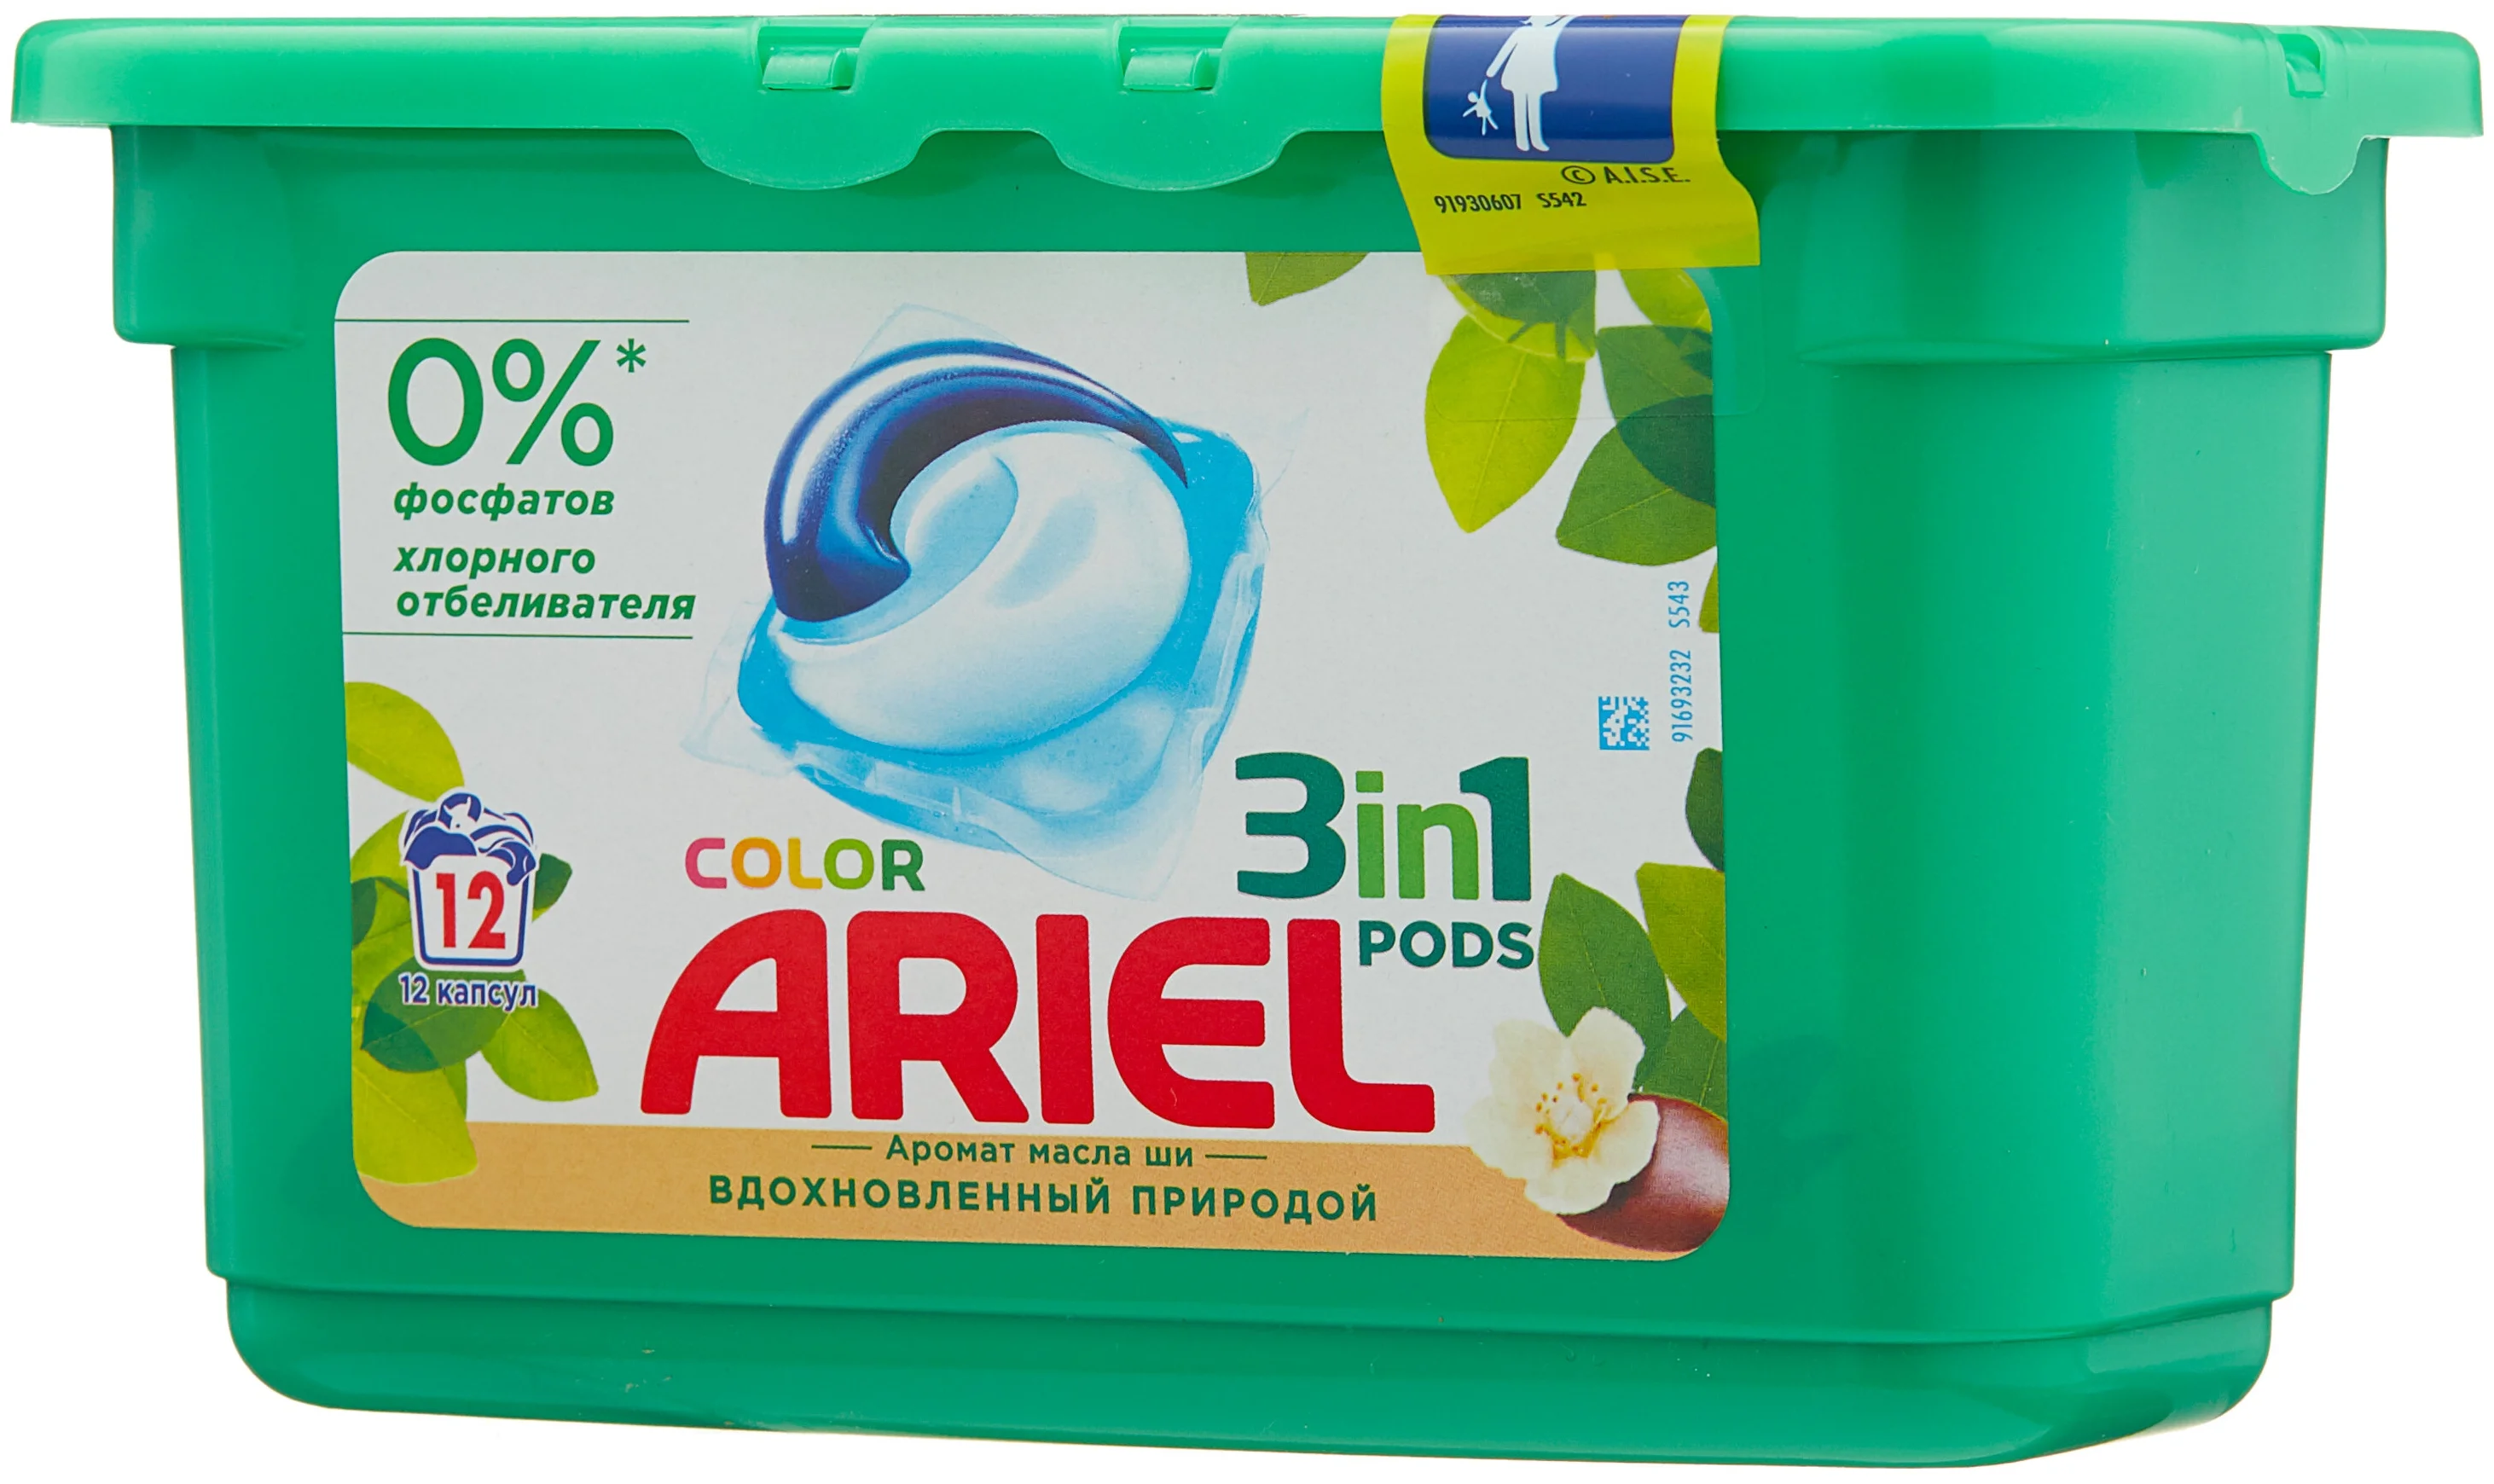 Ariel Color "Аромат масла ши" - назначение: для хлопковых тканей, для цветных тканей, для синтетических тканей